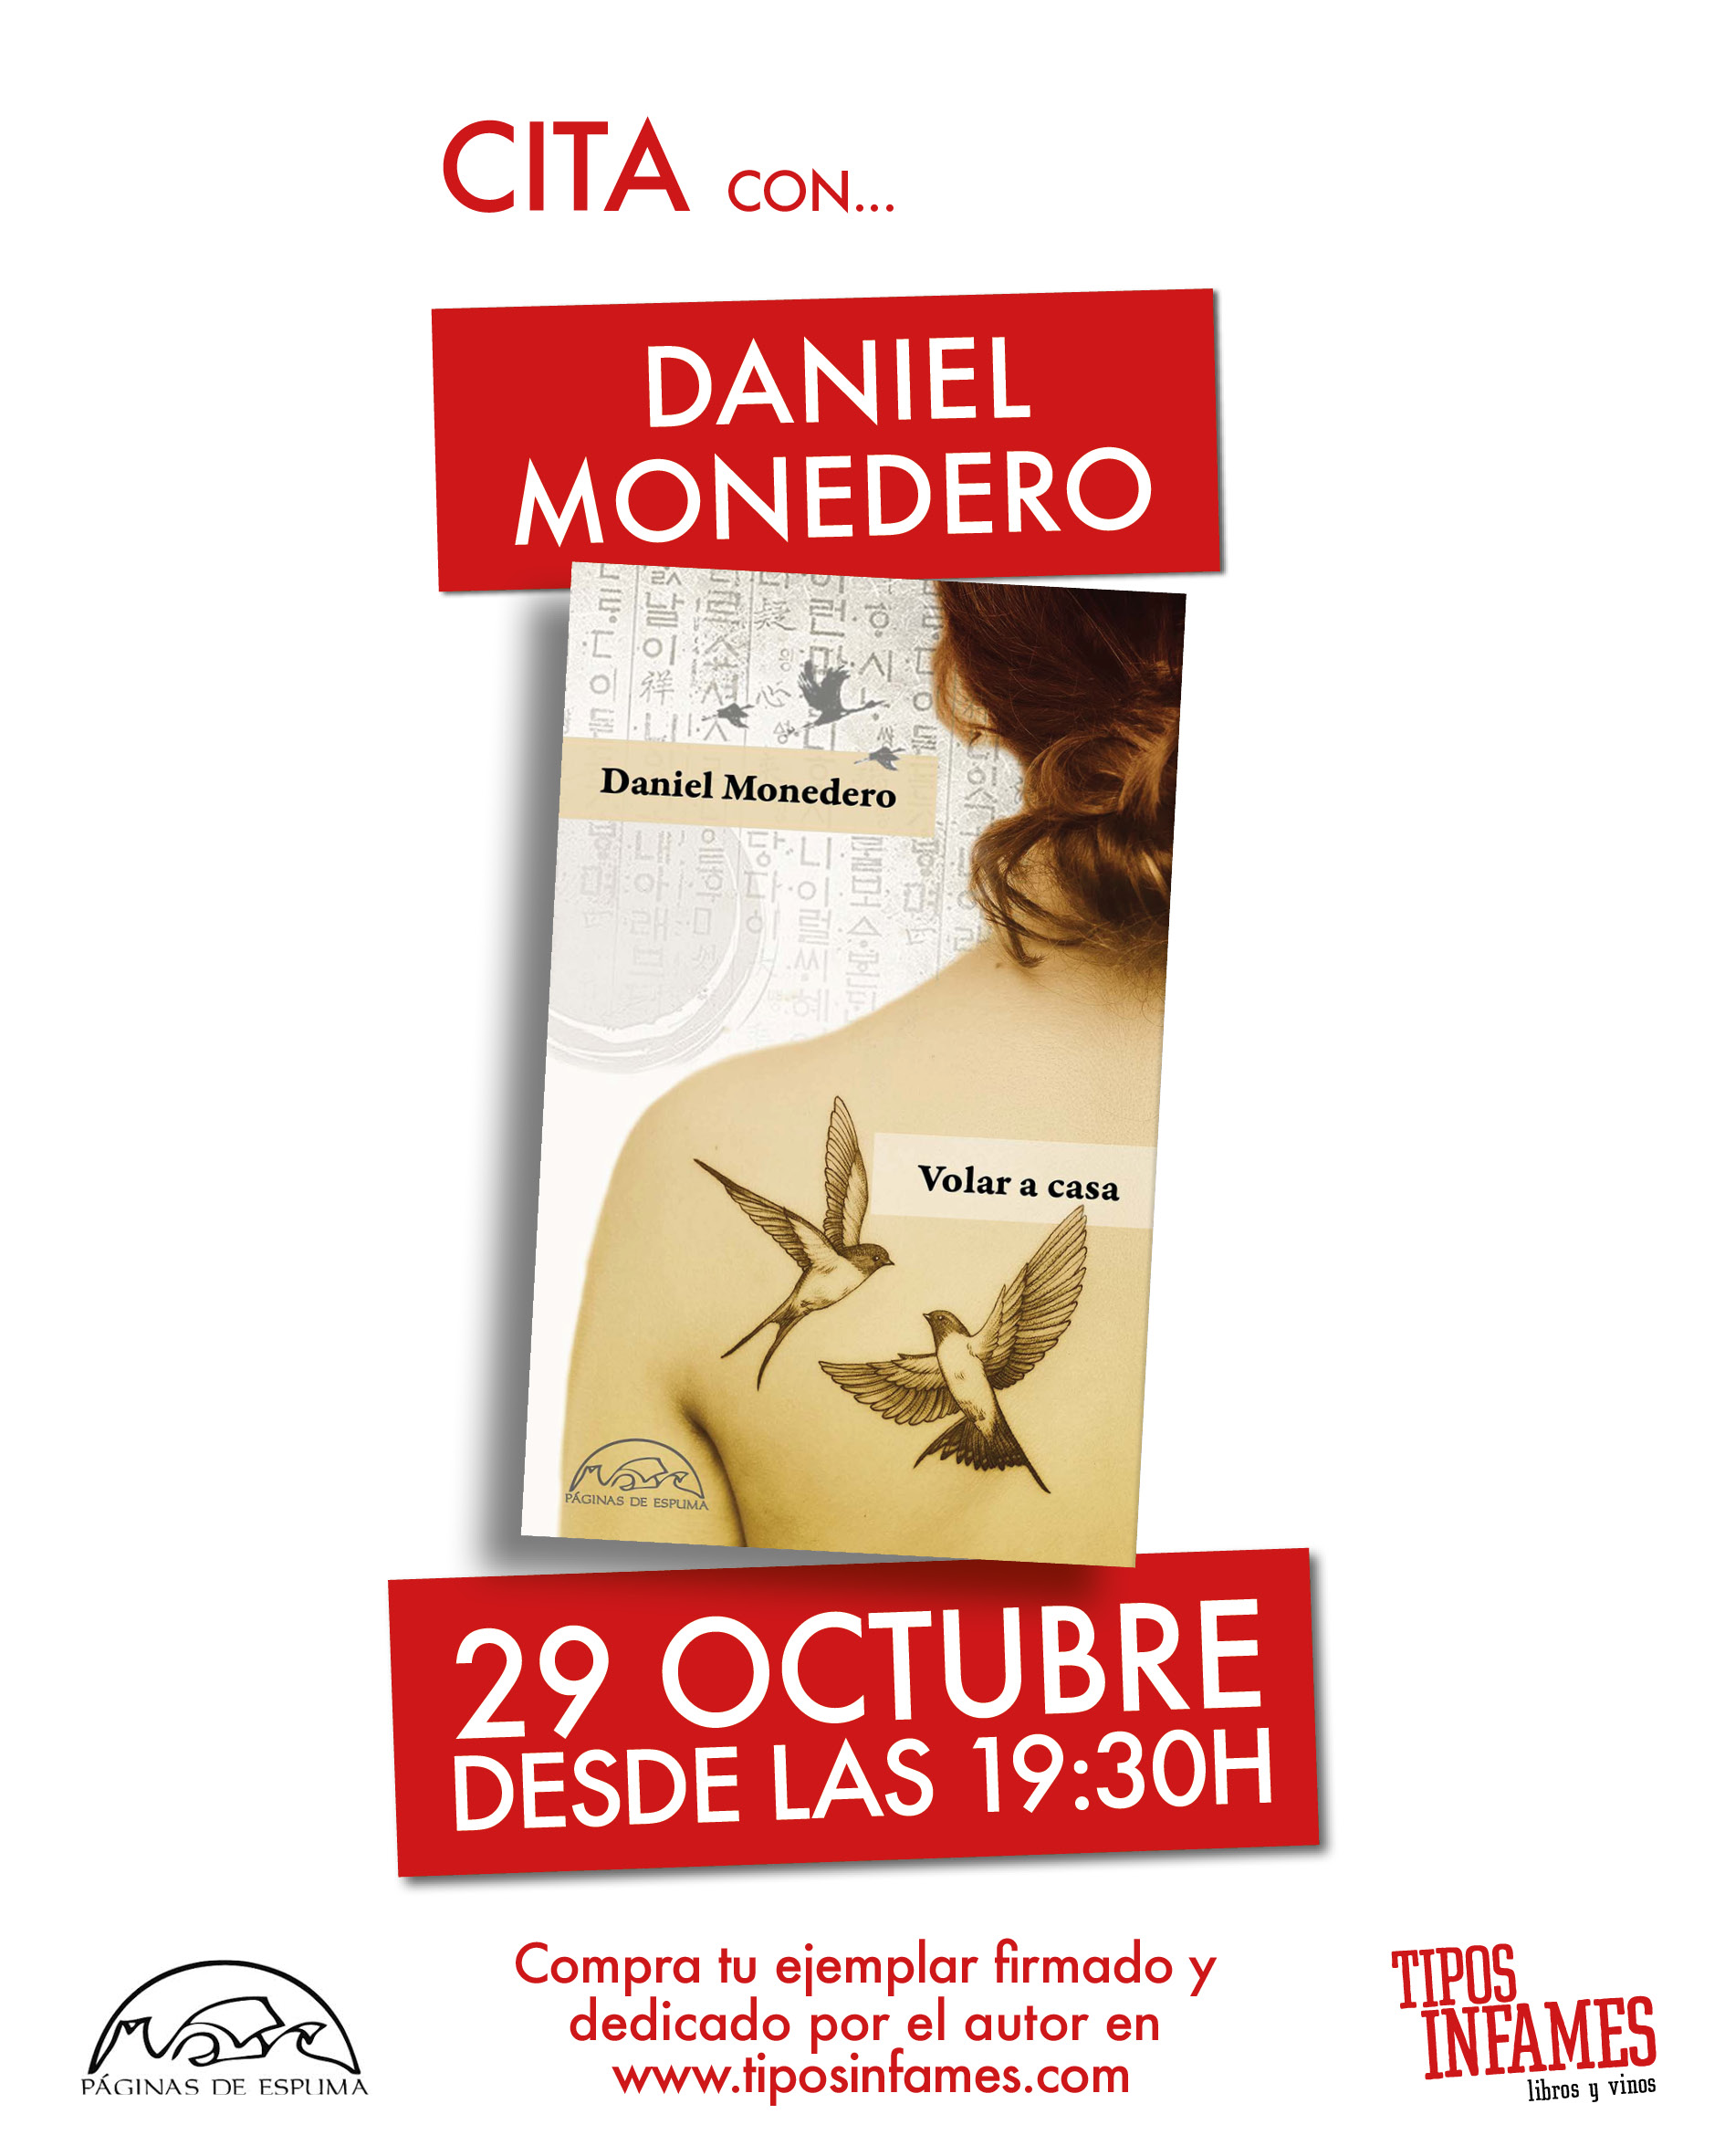 Cita con... Daniel Monedero